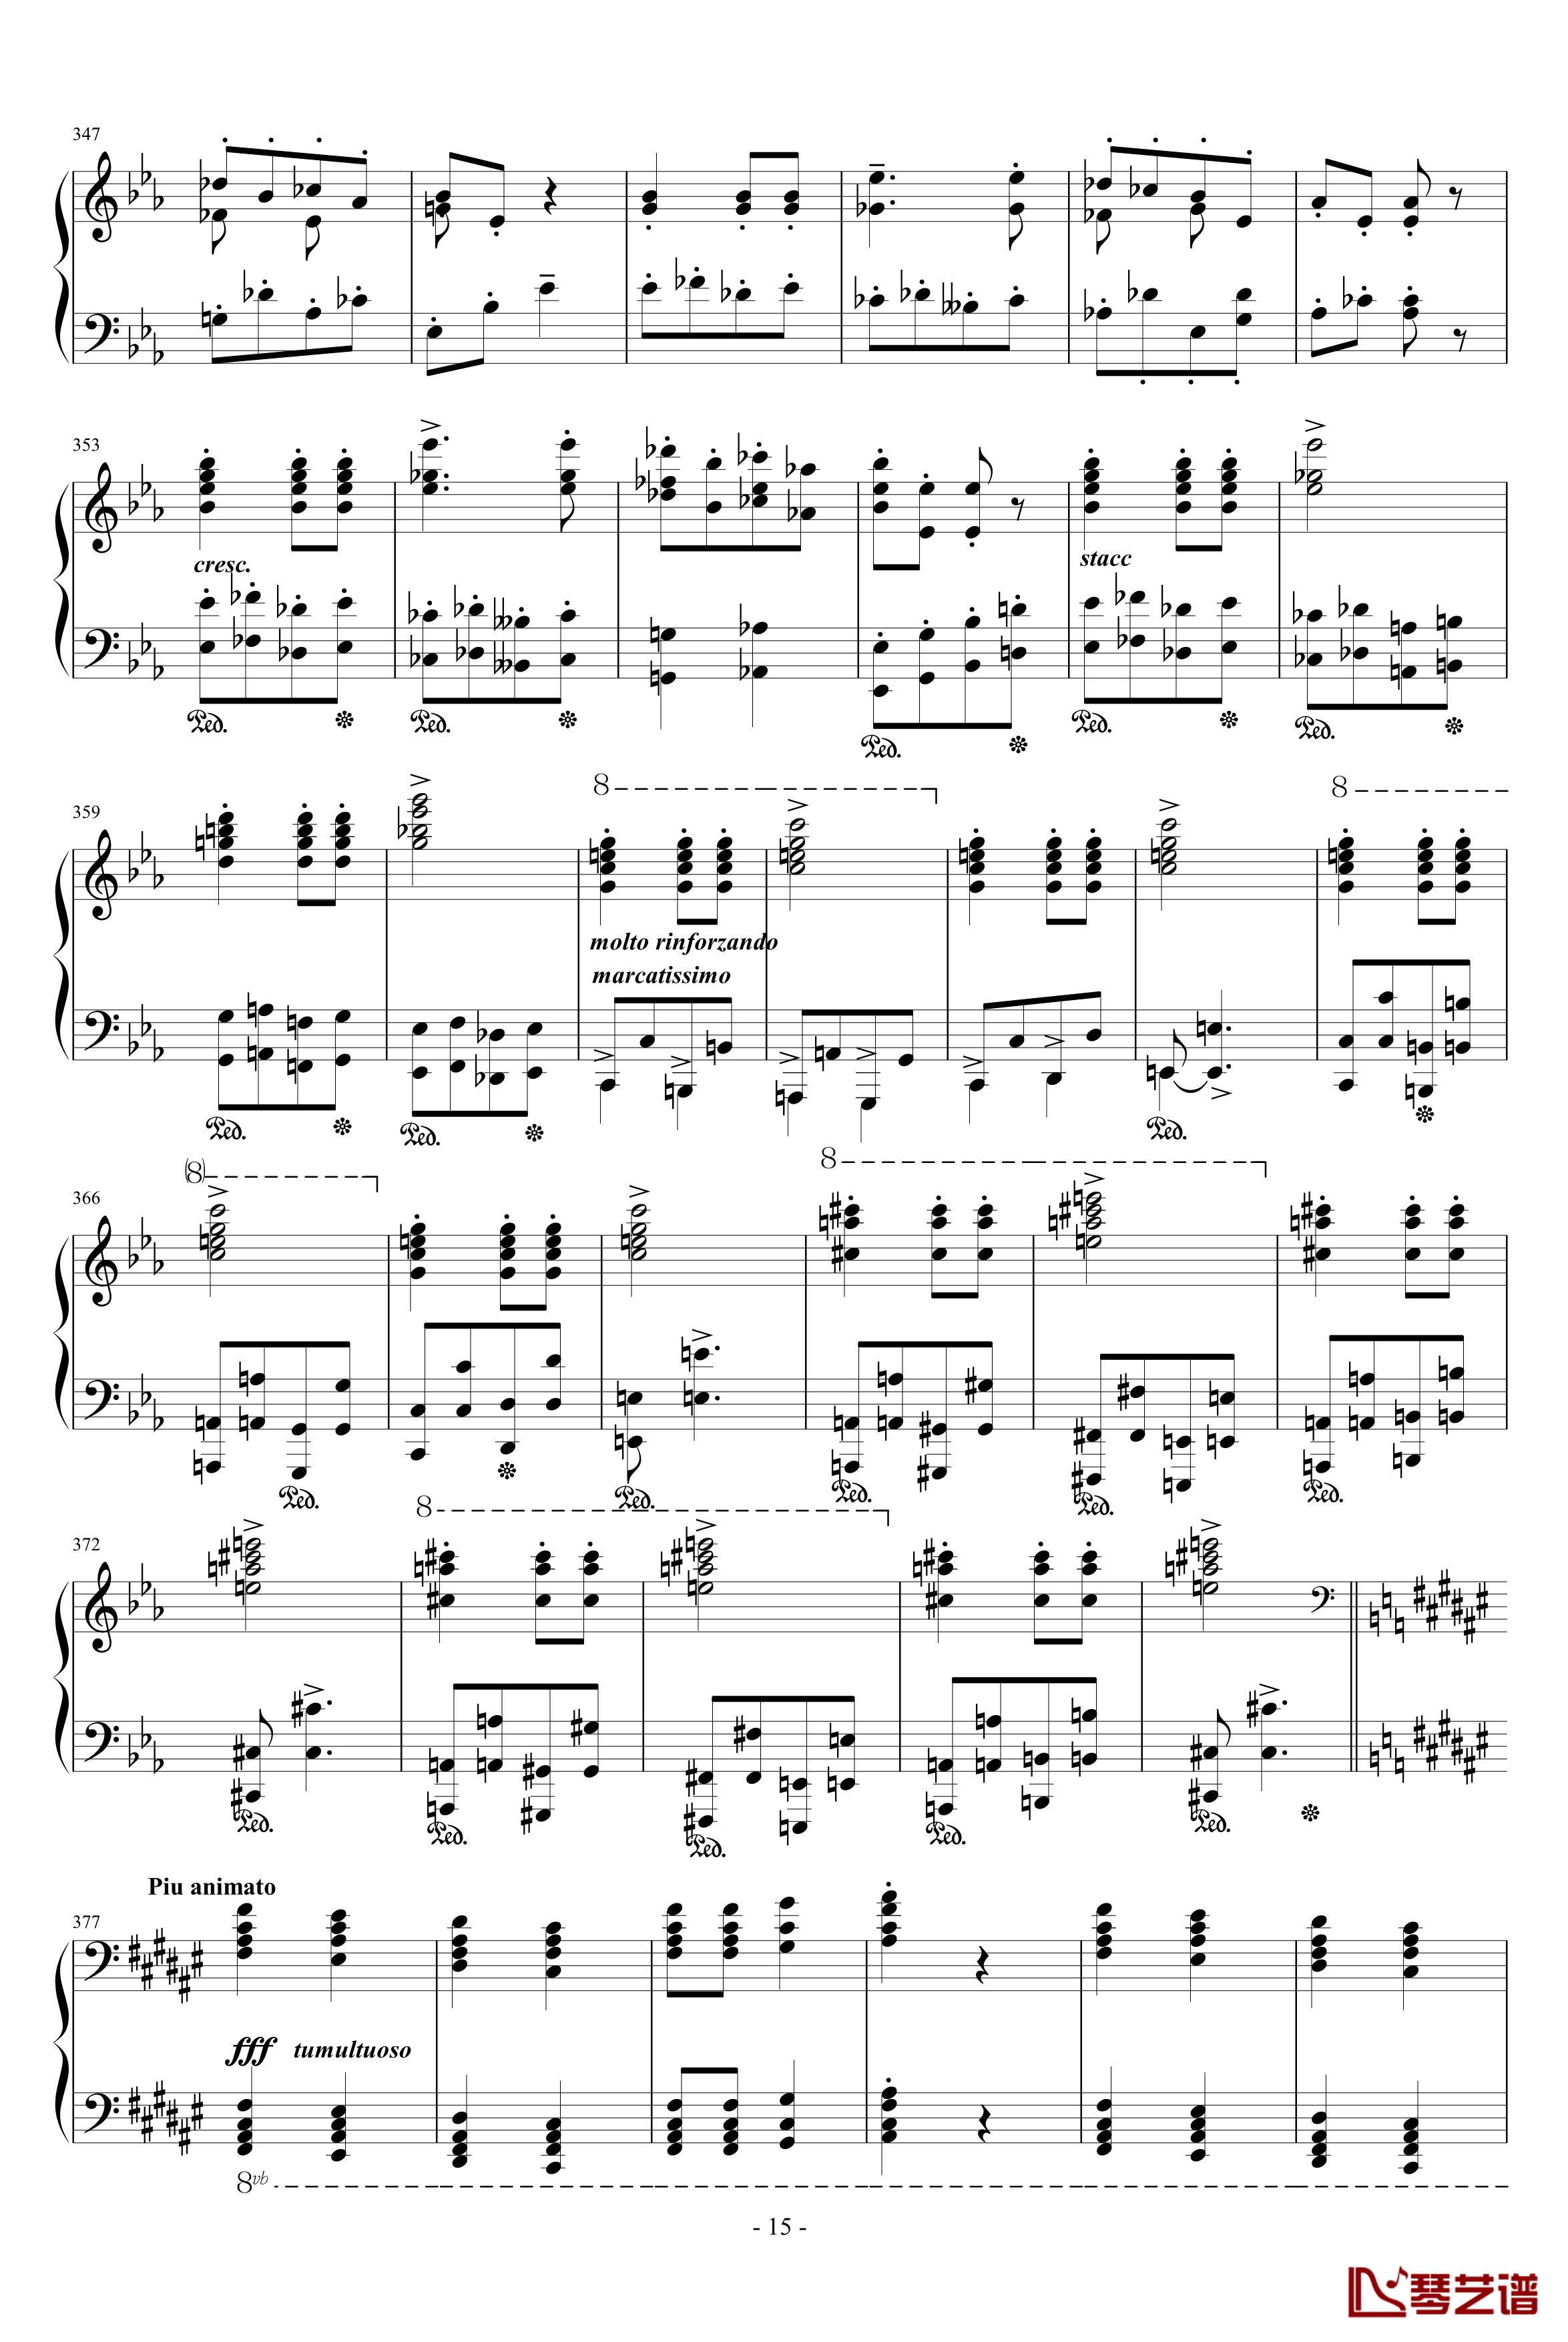 匈牙利狂想曲第9号钢琴谱-19首匈狂里篇幅最浩大、技巧最艰深的作品之一-李斯特15